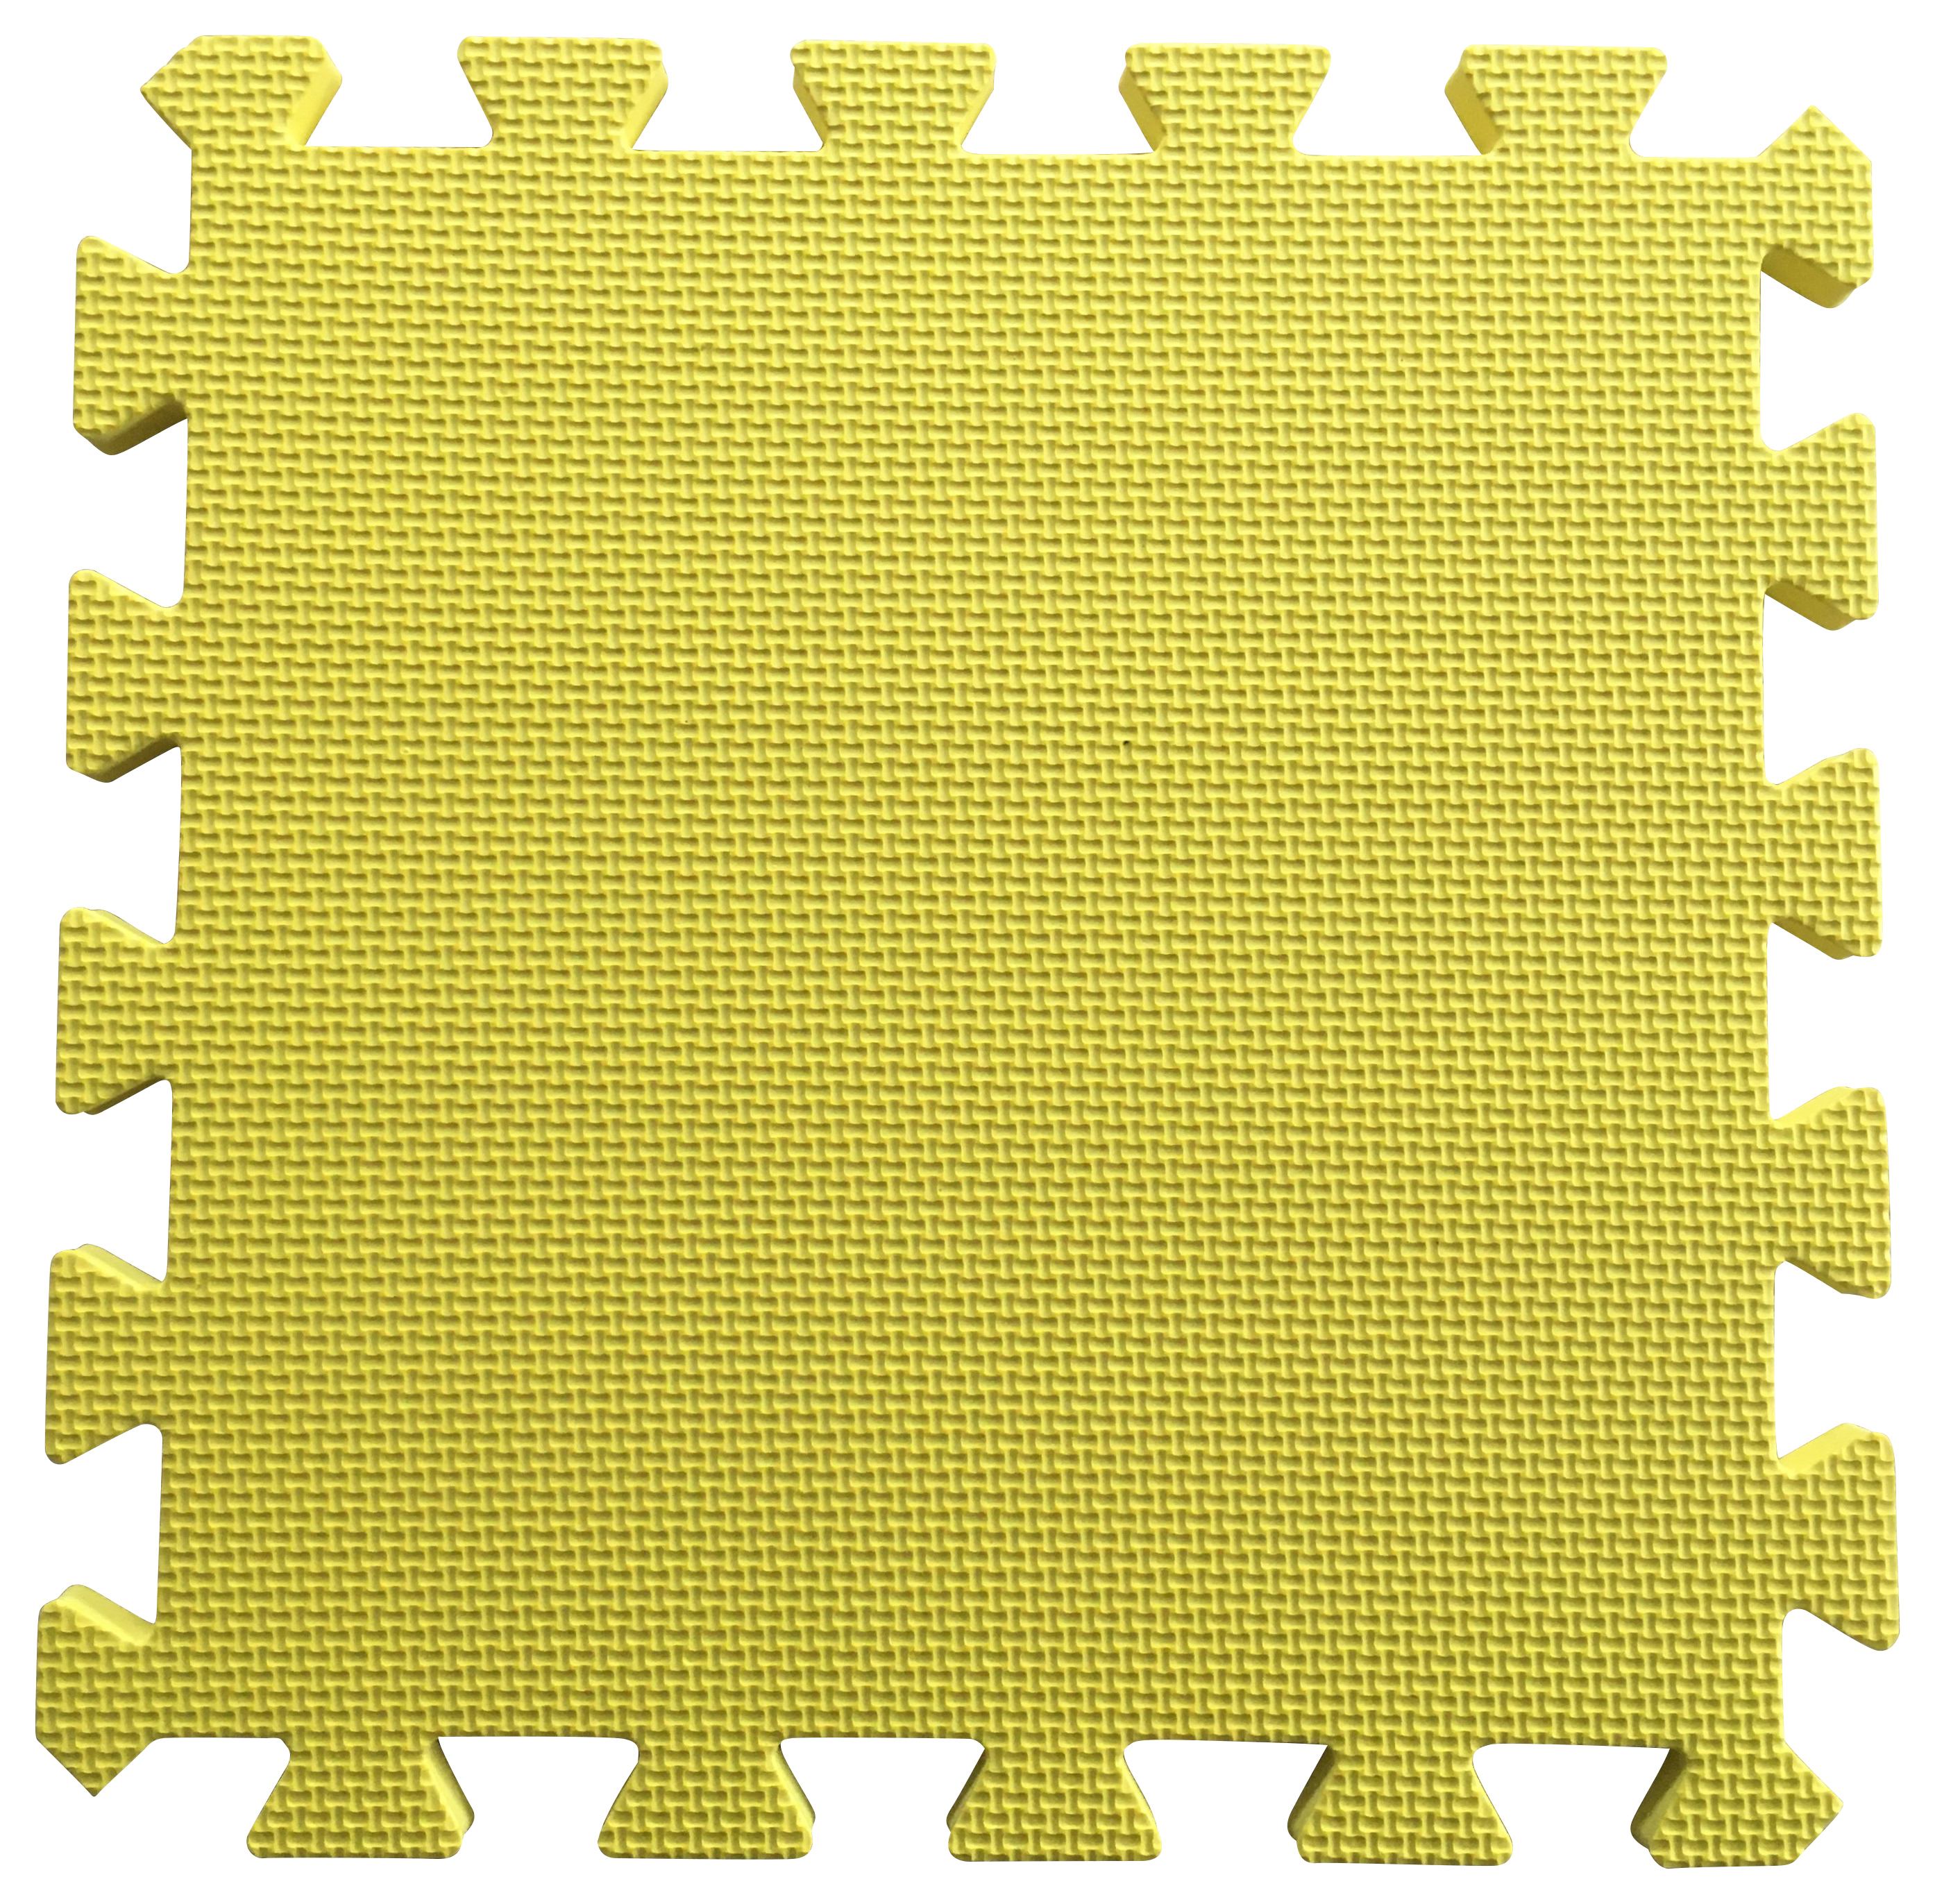 Warm Floor Yellow Interlocking Floor Tiles for Garden Buildings - 3 x 4ft